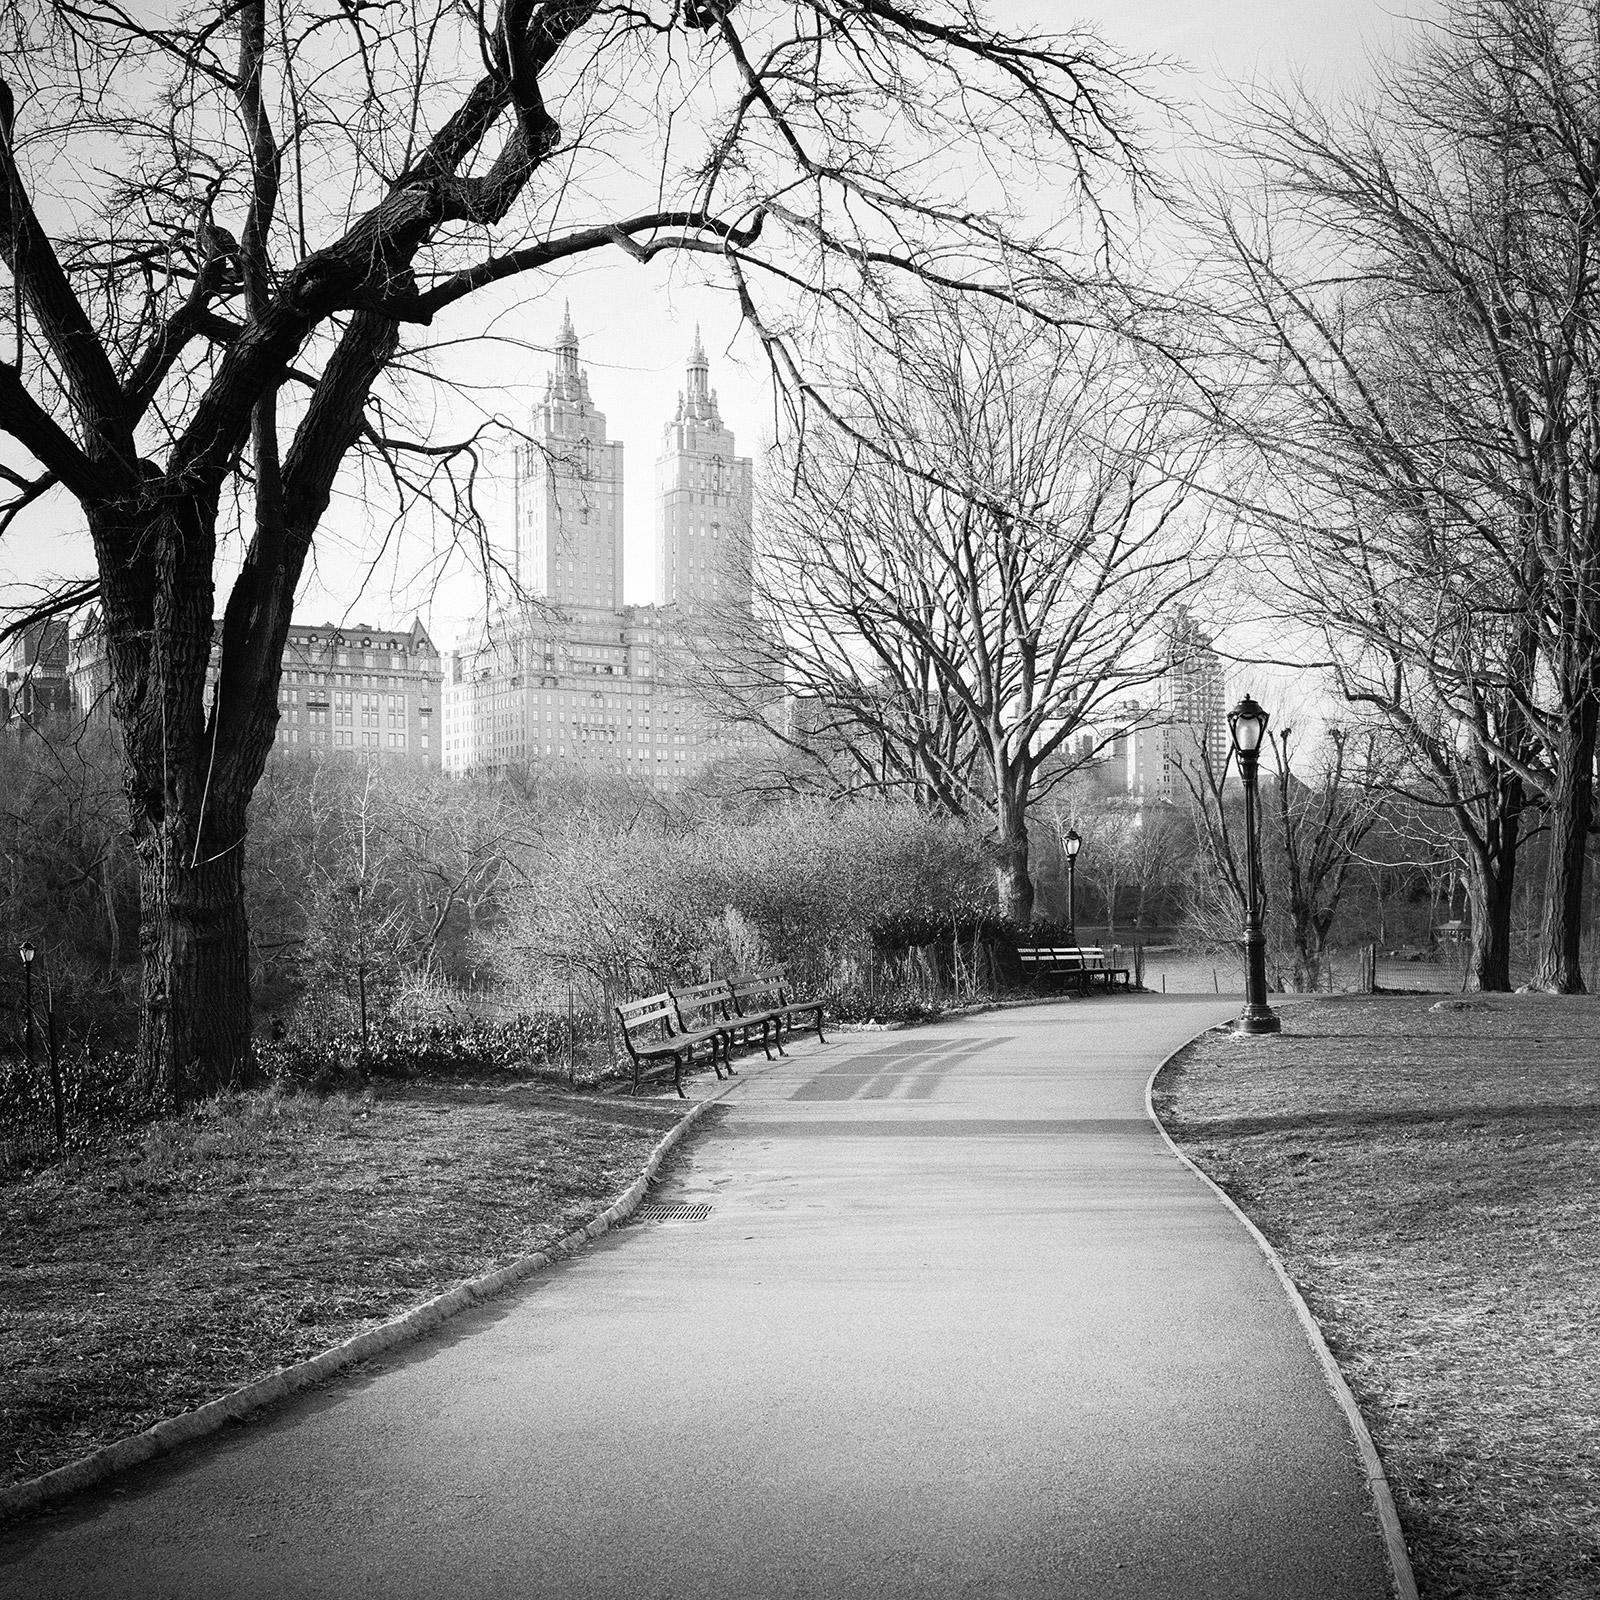 The San Remo, Central Park, New York City, photographie de paysage urbain en noir et blanc